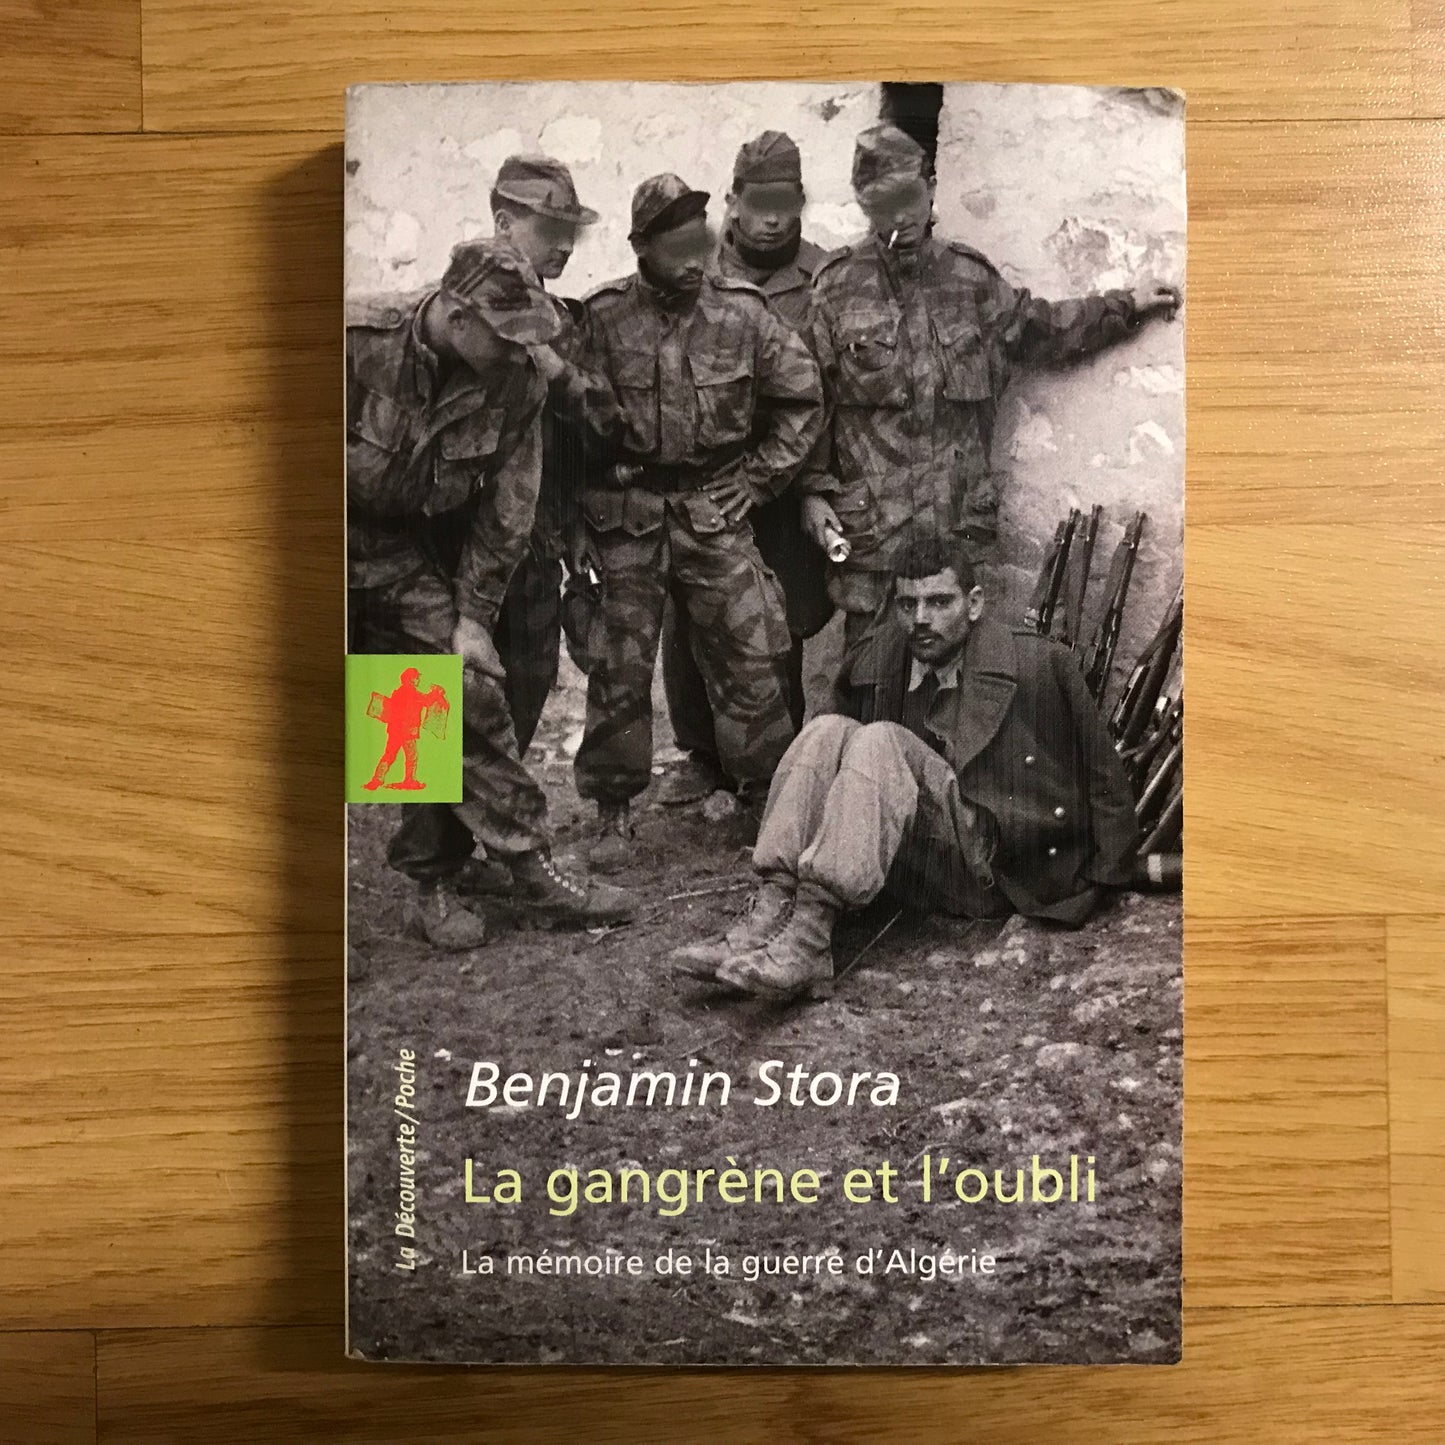 Stora, Benjamin - La gangrène et l’oubli, la mémoire de la guerre d’Algérie